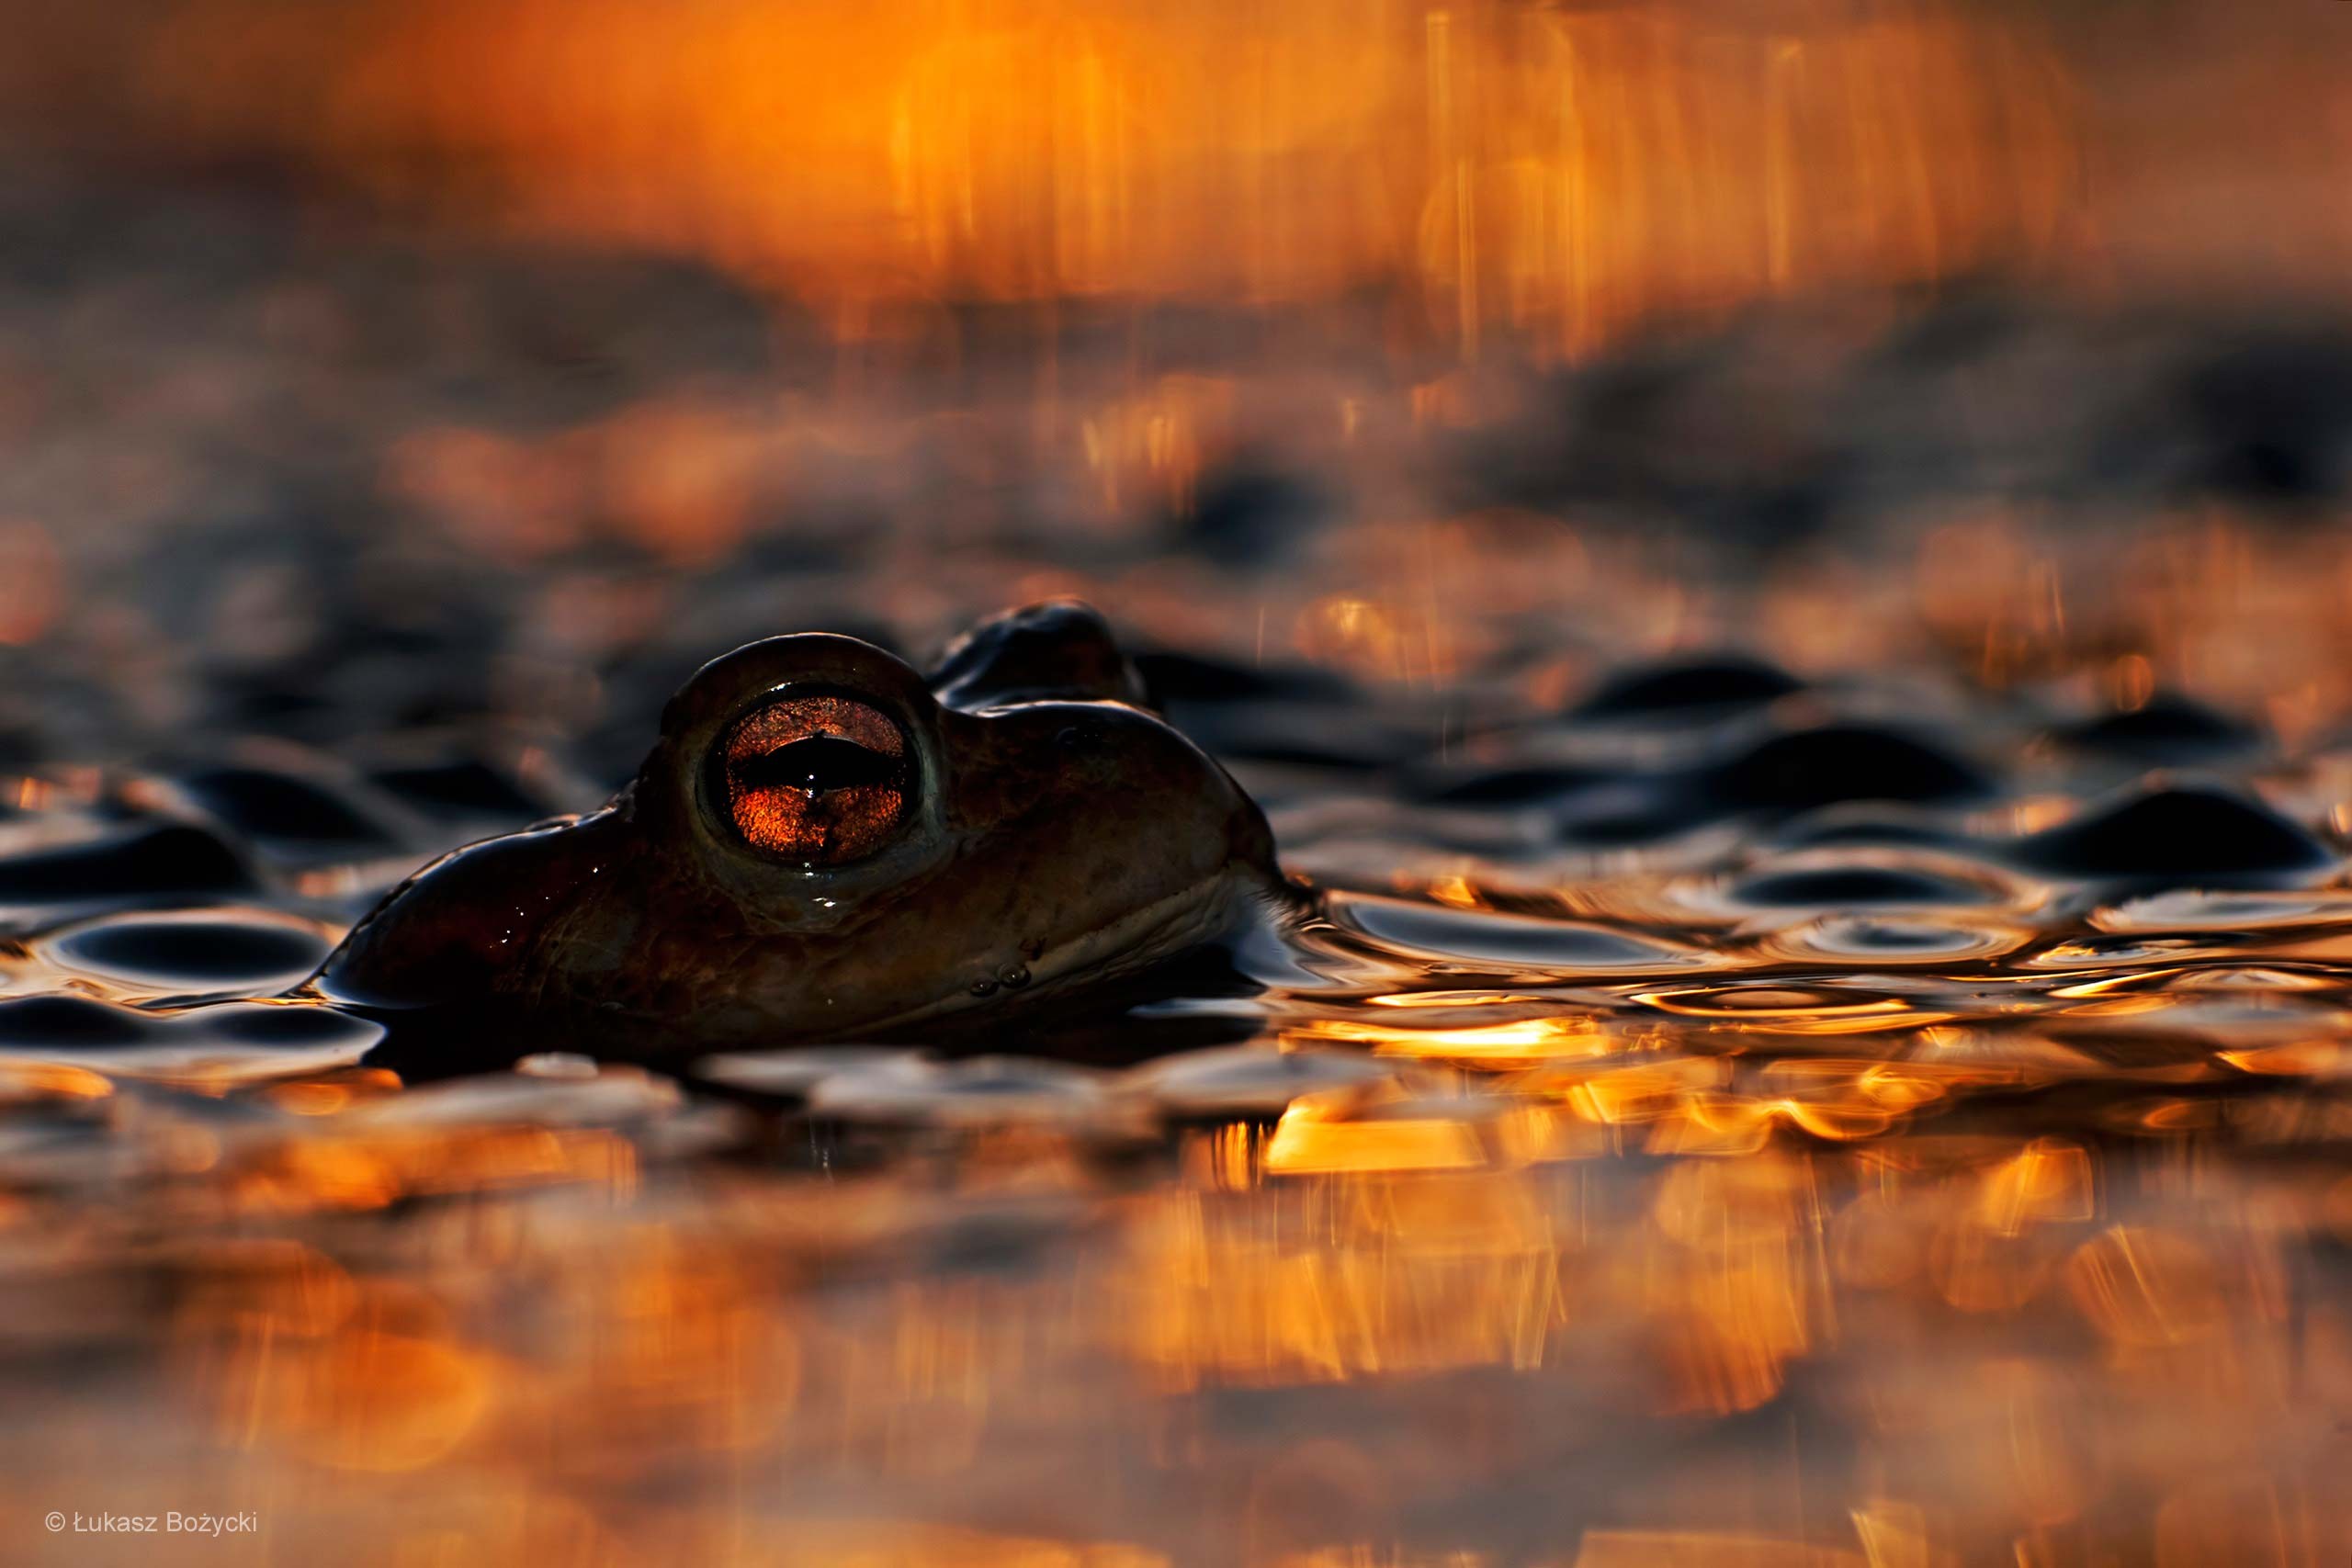 General 2560x1707 animals frog lake eyes macro amphibian water orange nature